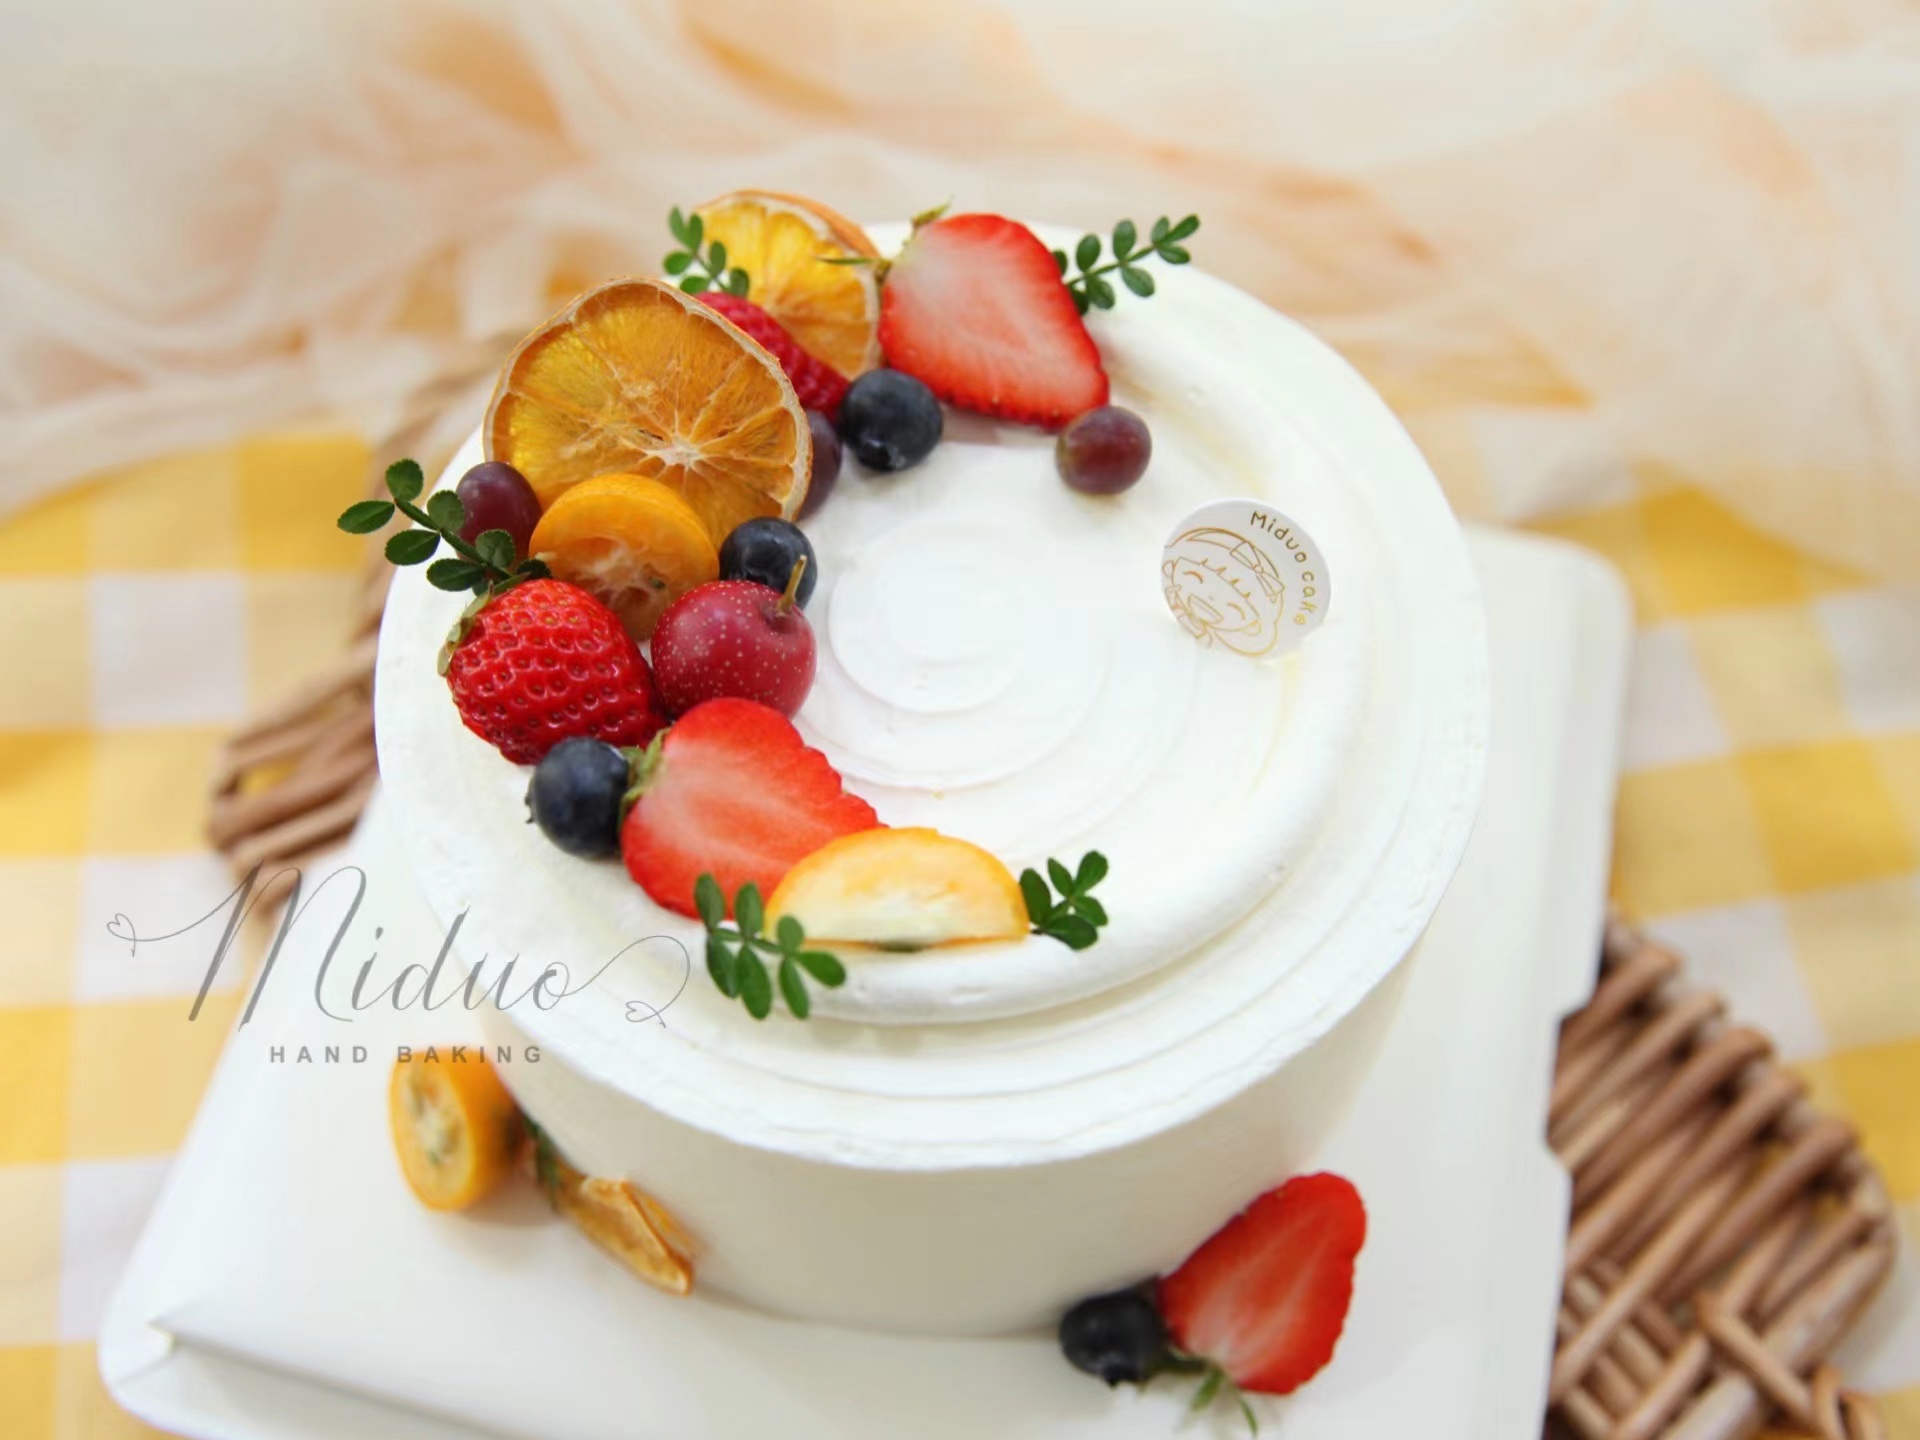 下午茶5水果淡奶油最热卖的蛋糕之一经典款式新鲜水果天然乳脂淡奶油